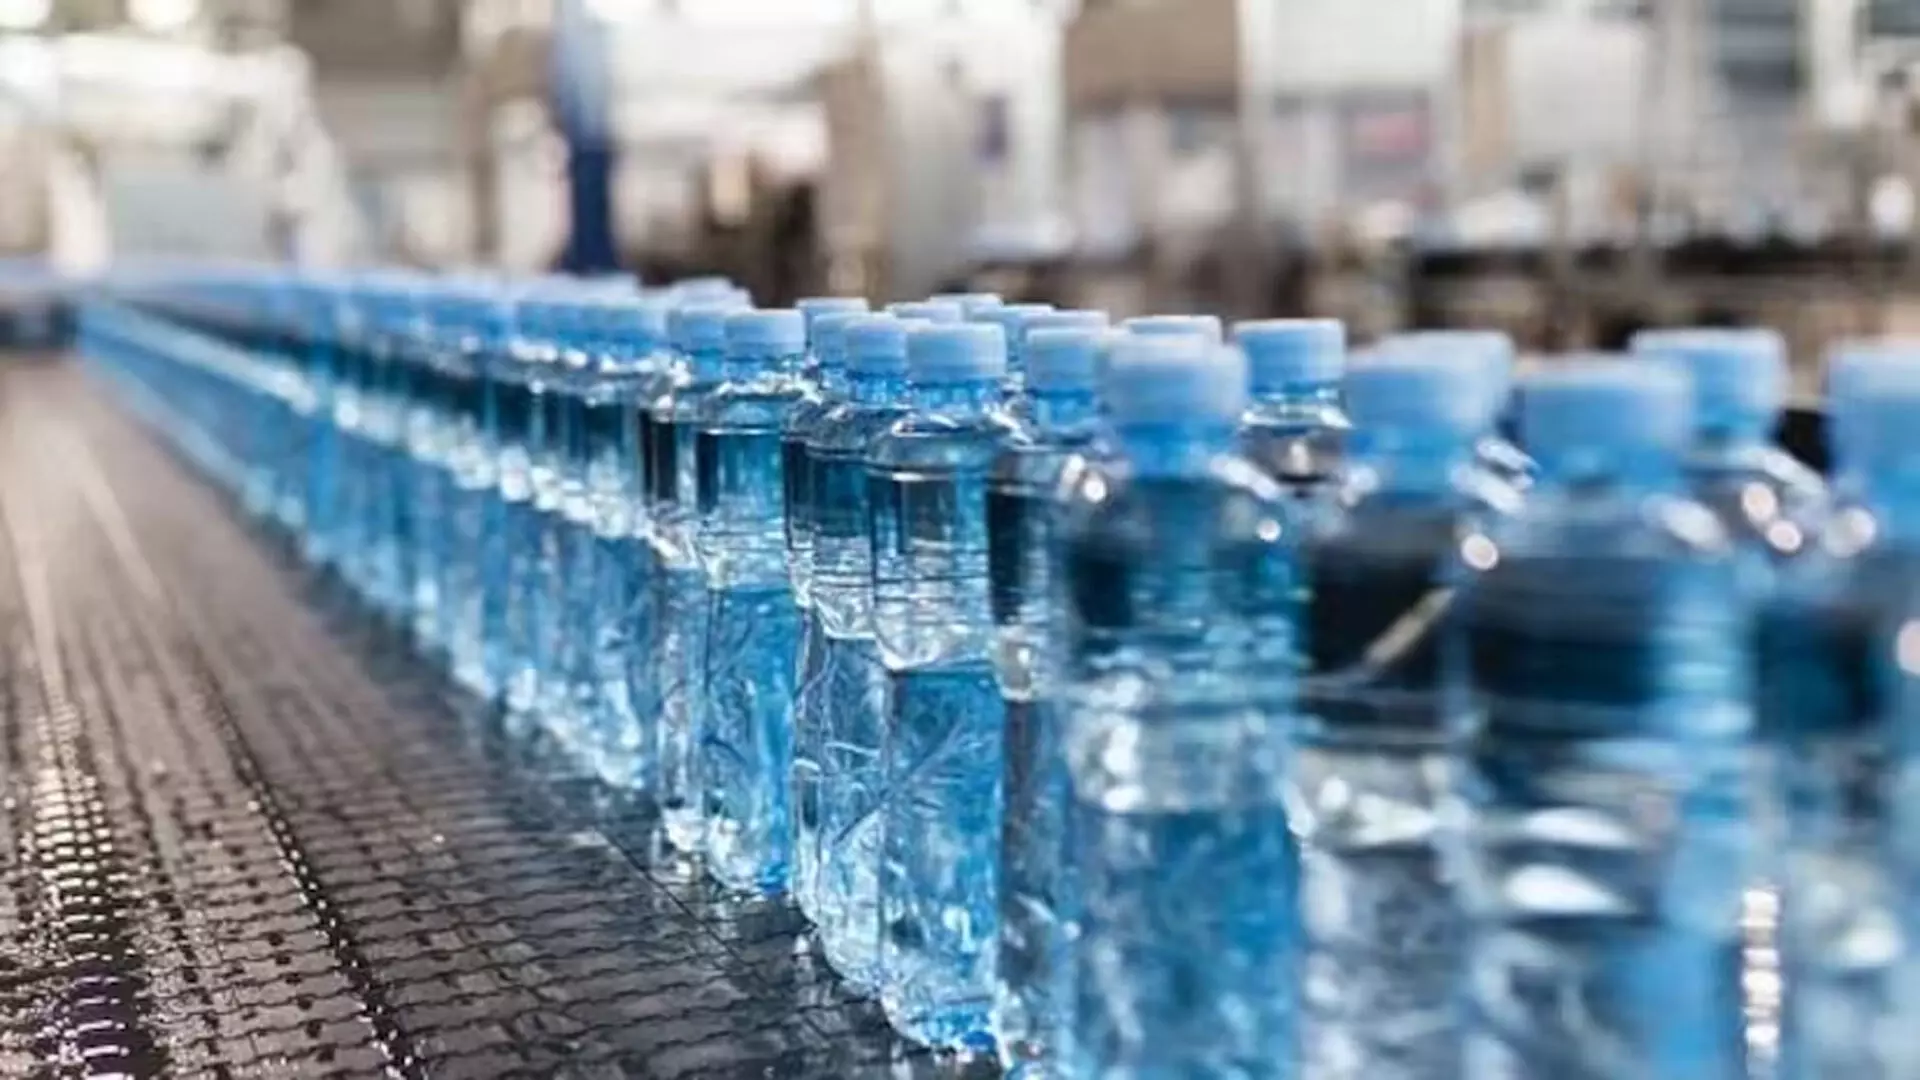 Bombay हाई कोर्ट के मुख्य न्यायाधीश ने प्लास्टिक की बोतलों और थैलियों पर प्रतिबंध लगाया